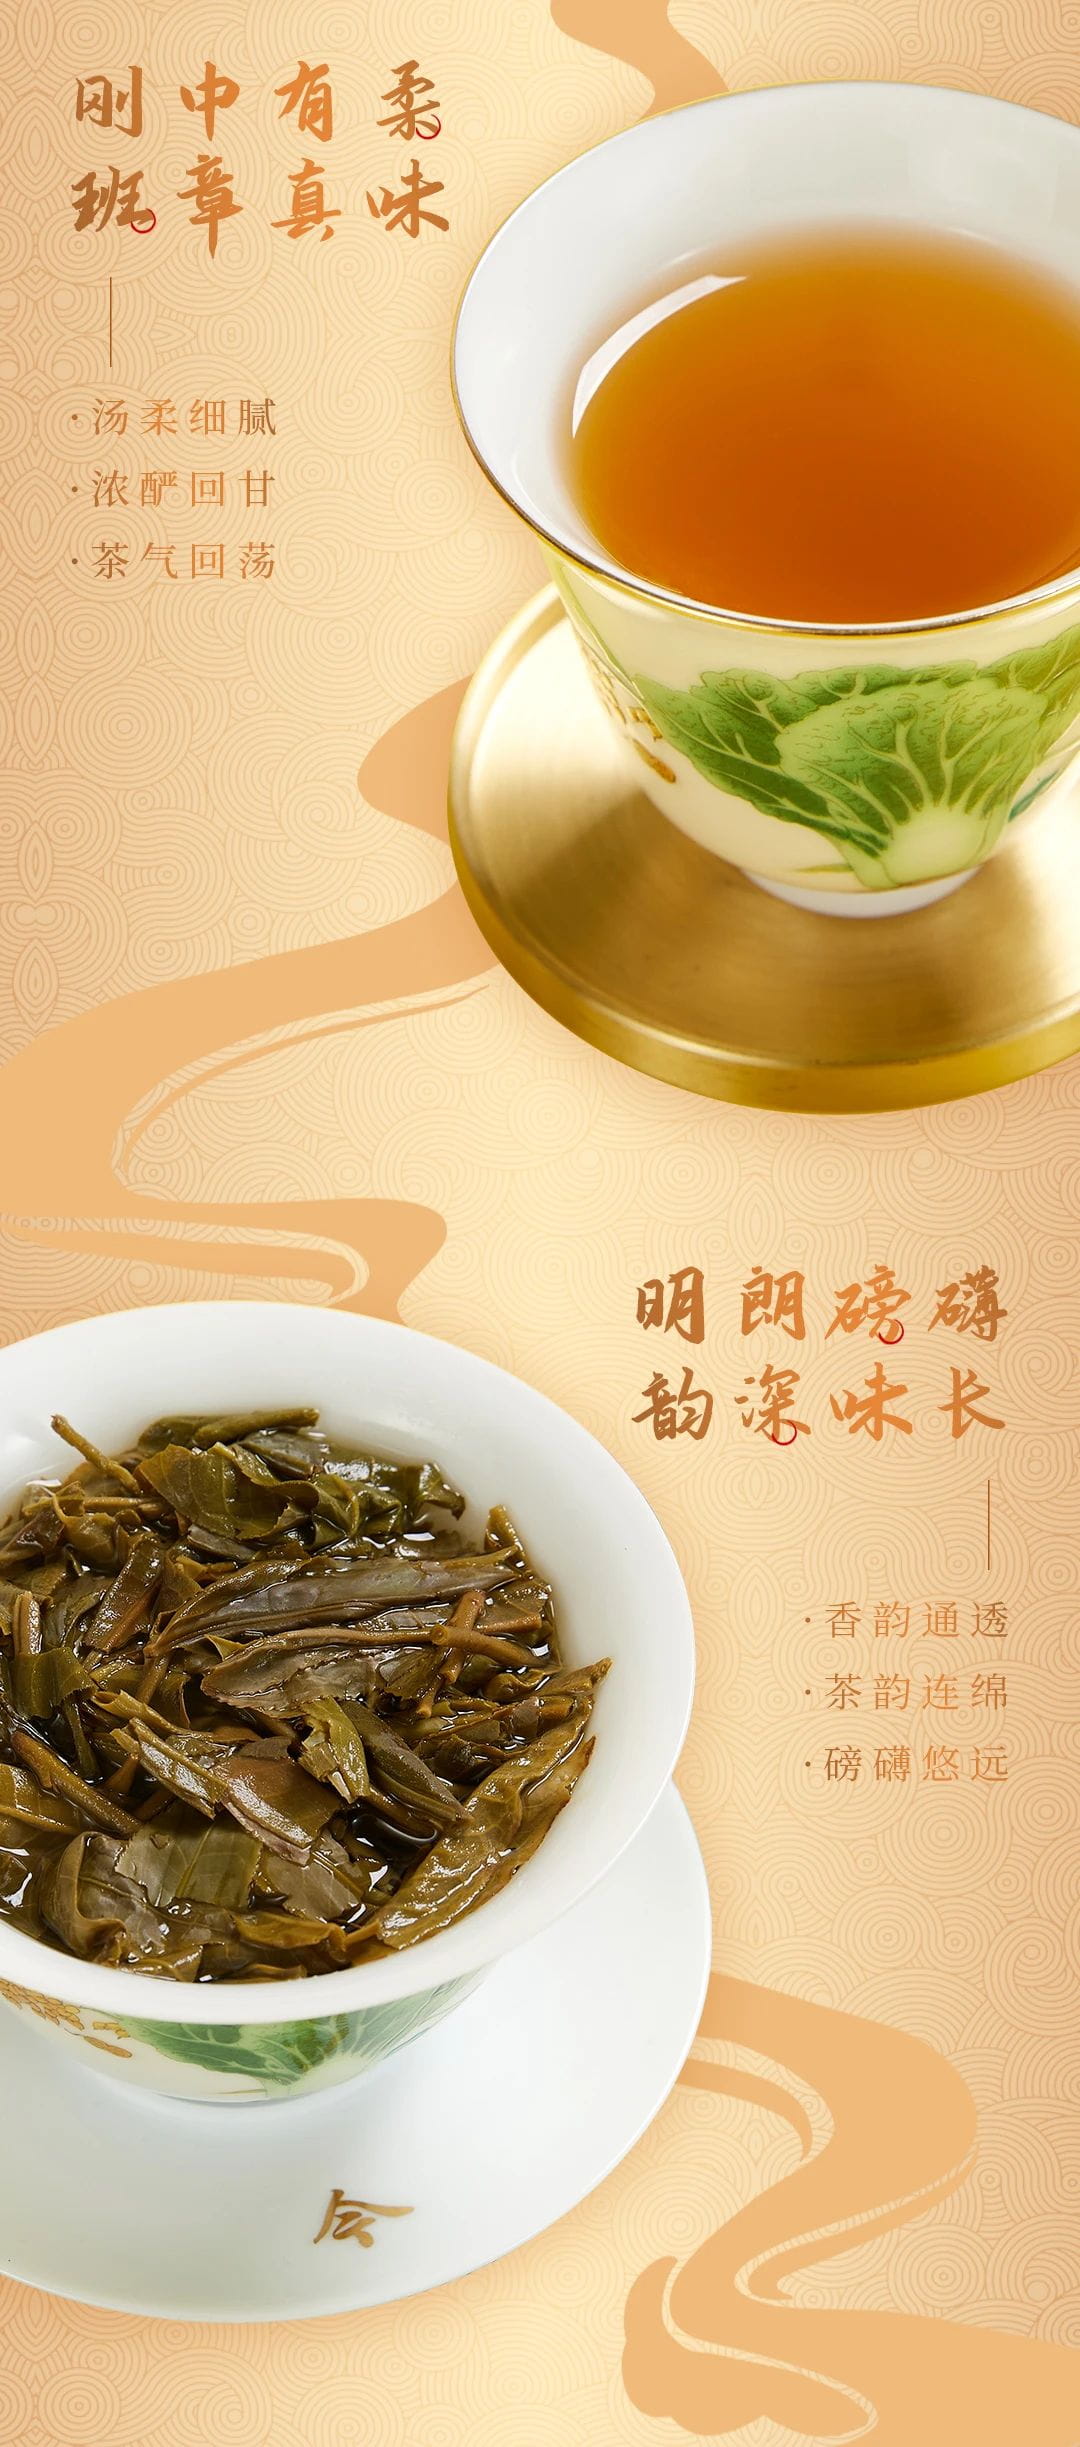 班章系列丨福今茶业2022年福今班章（茶王）青饼正式发售！